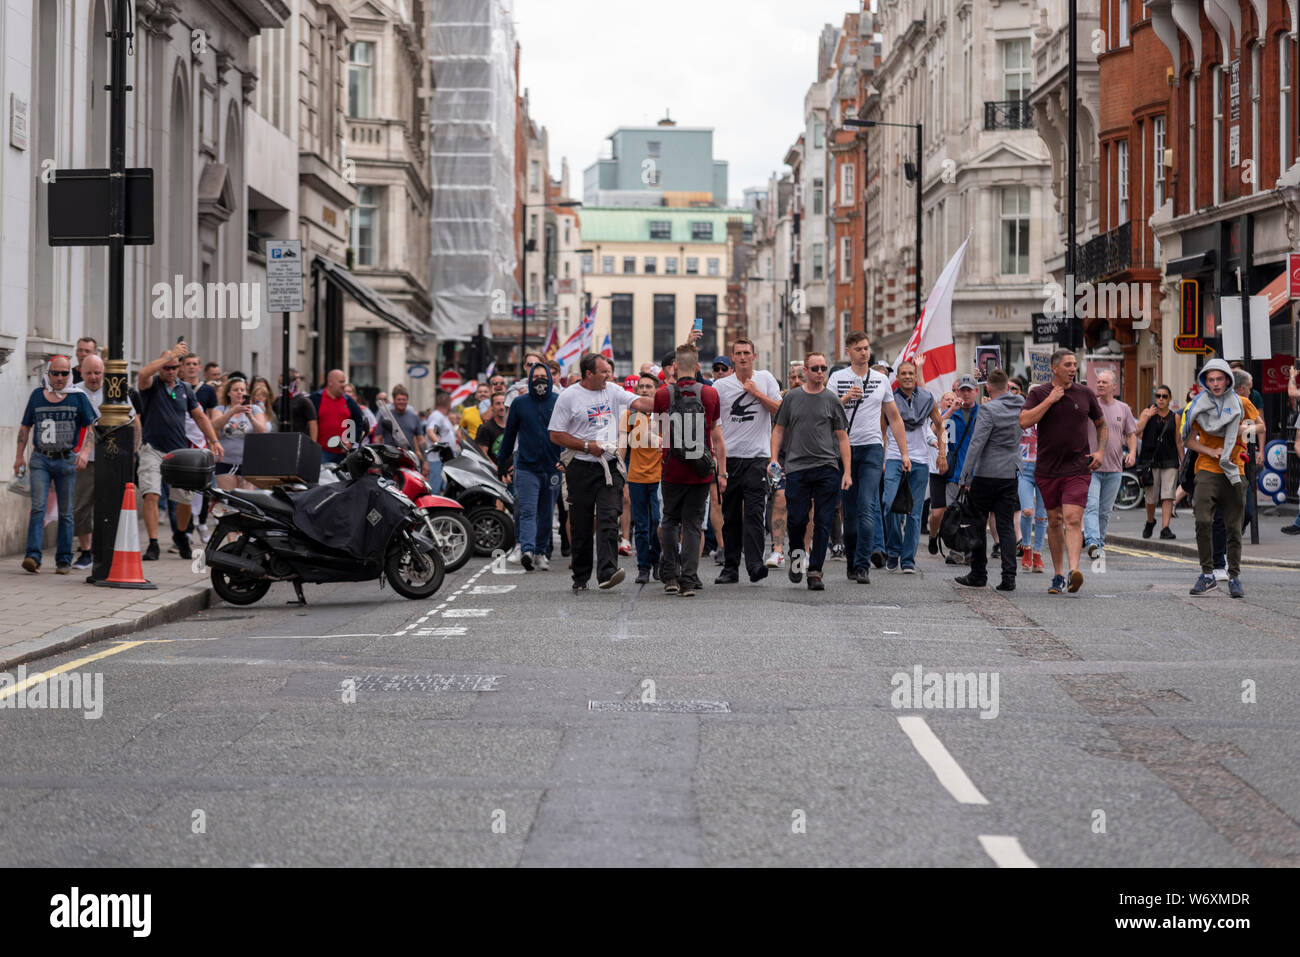 Eine Rallye findet in London aus Protest gegen die Inhaftierung von Stephen Yaxley-Lennon, die unter dem Namen Tommy Robinson, und verbüßt eine Haftstrafe im Belmarsh Prison in wegen Missachtung des Gerichts gefunden. Stockfoto